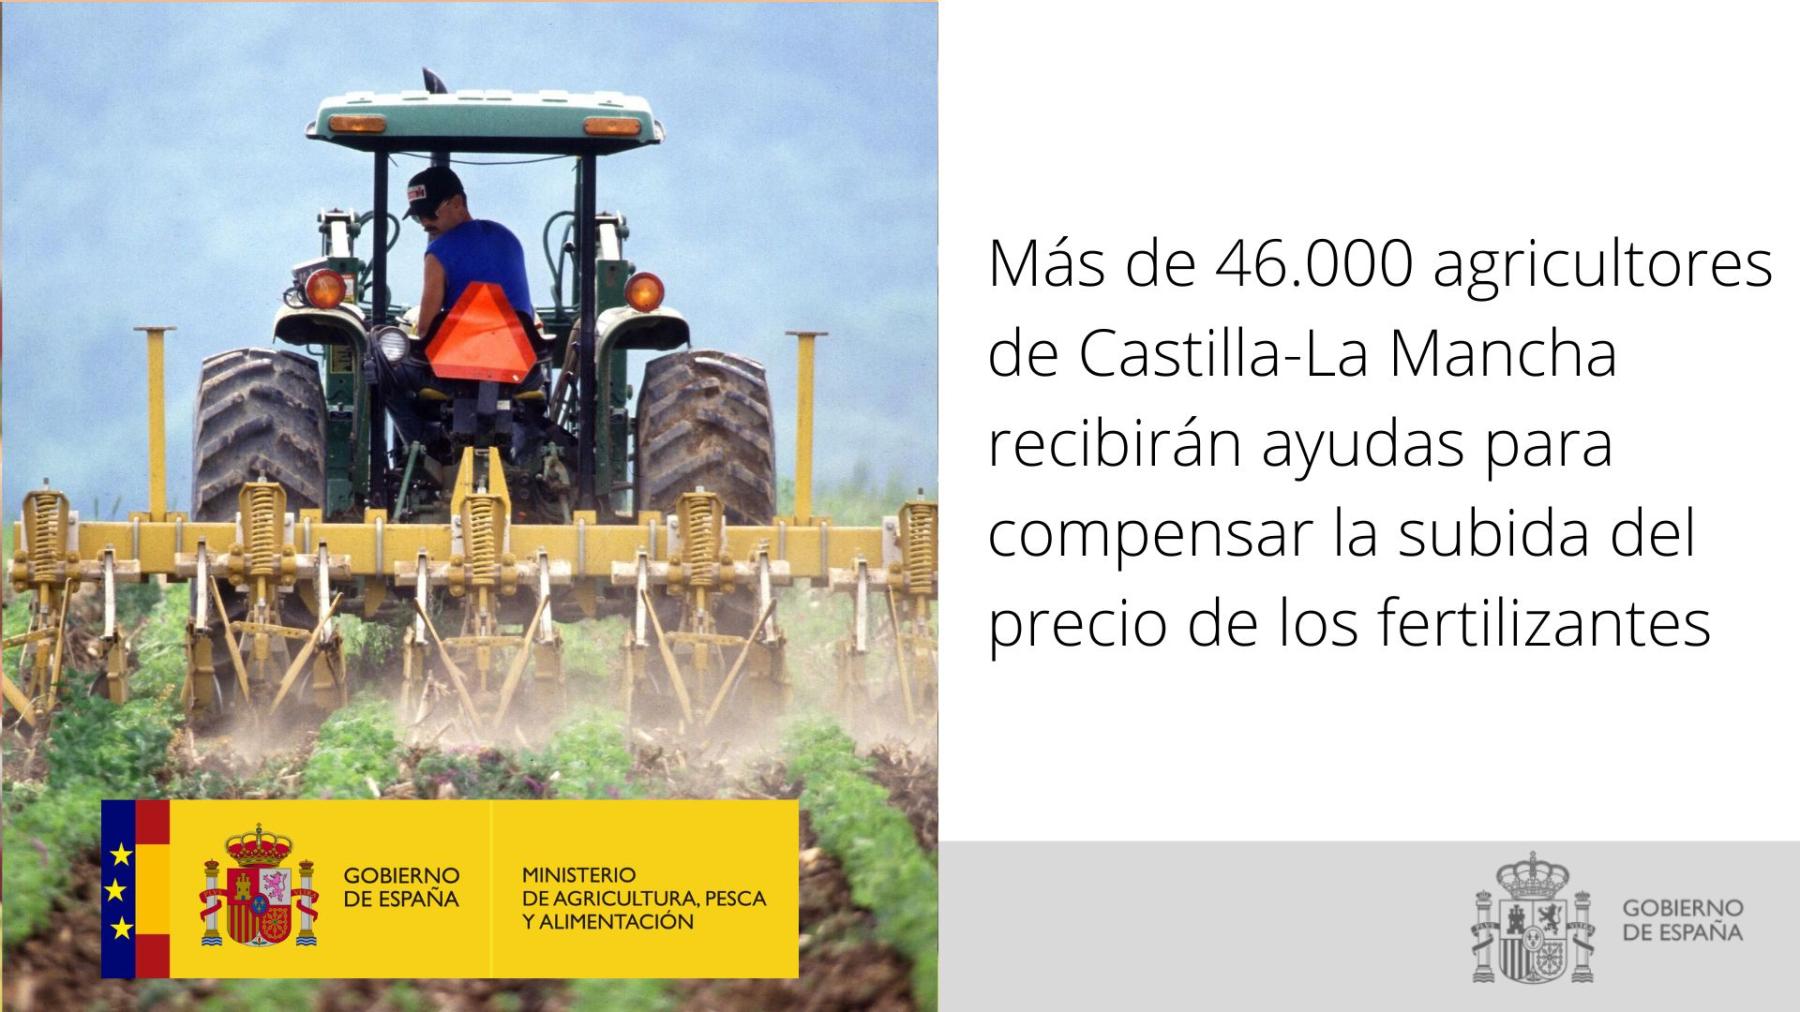 Más de 46.000 agricultores de Castilla-La Mancha recibirán ayudas para compensar la subida del precio de los fertilizantes